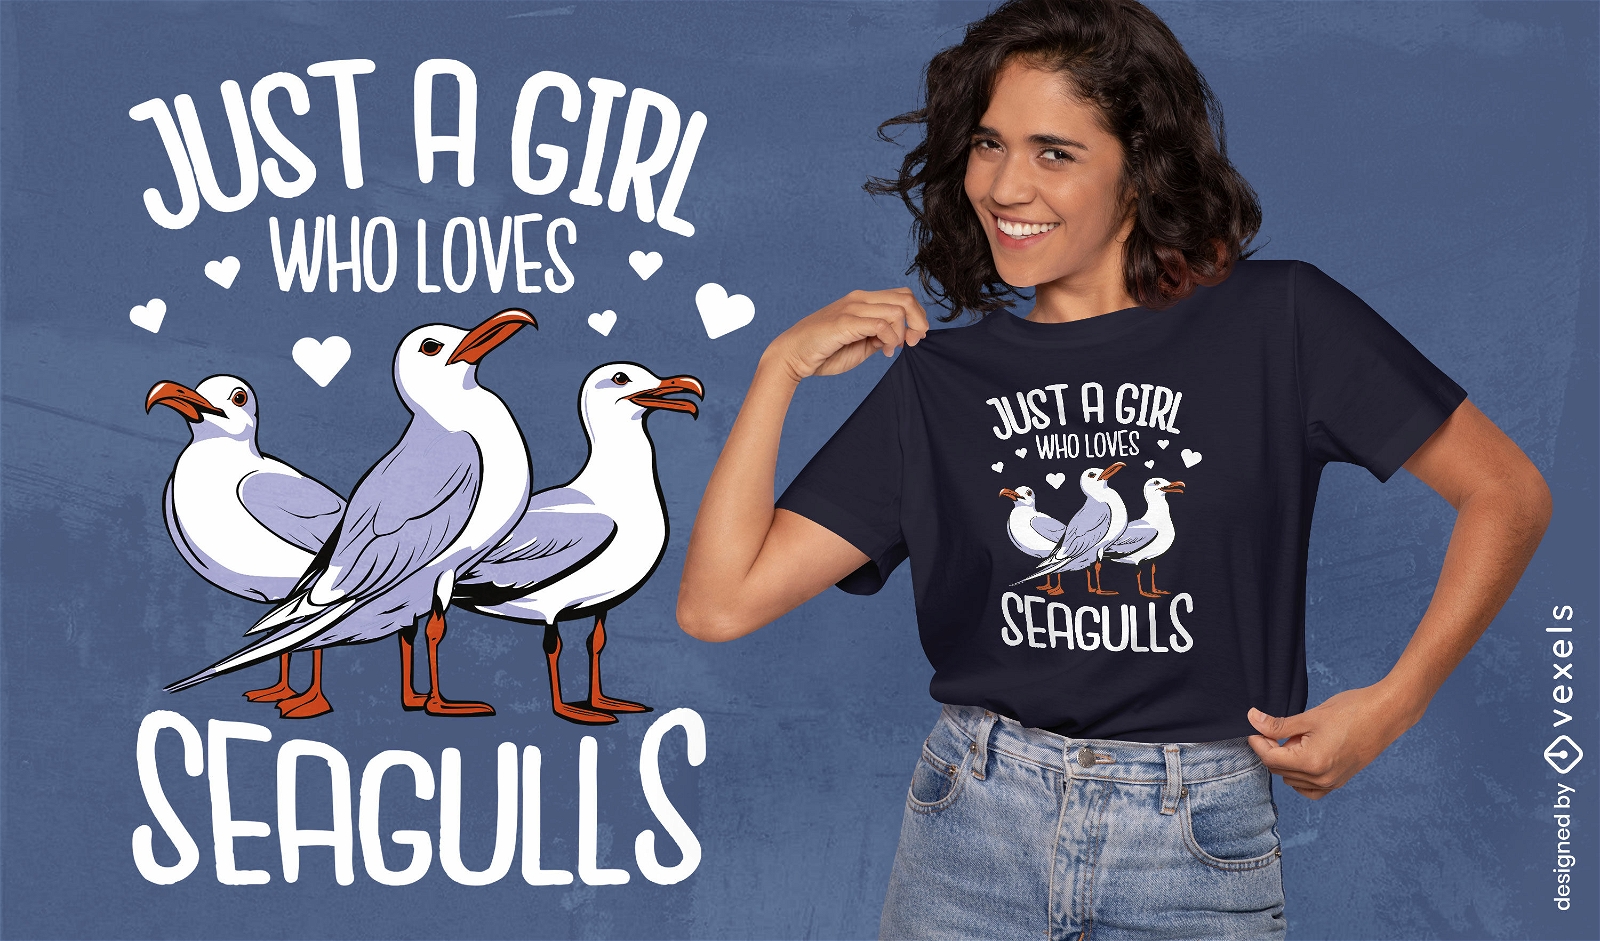 Girl loves seagulls t-shirt design